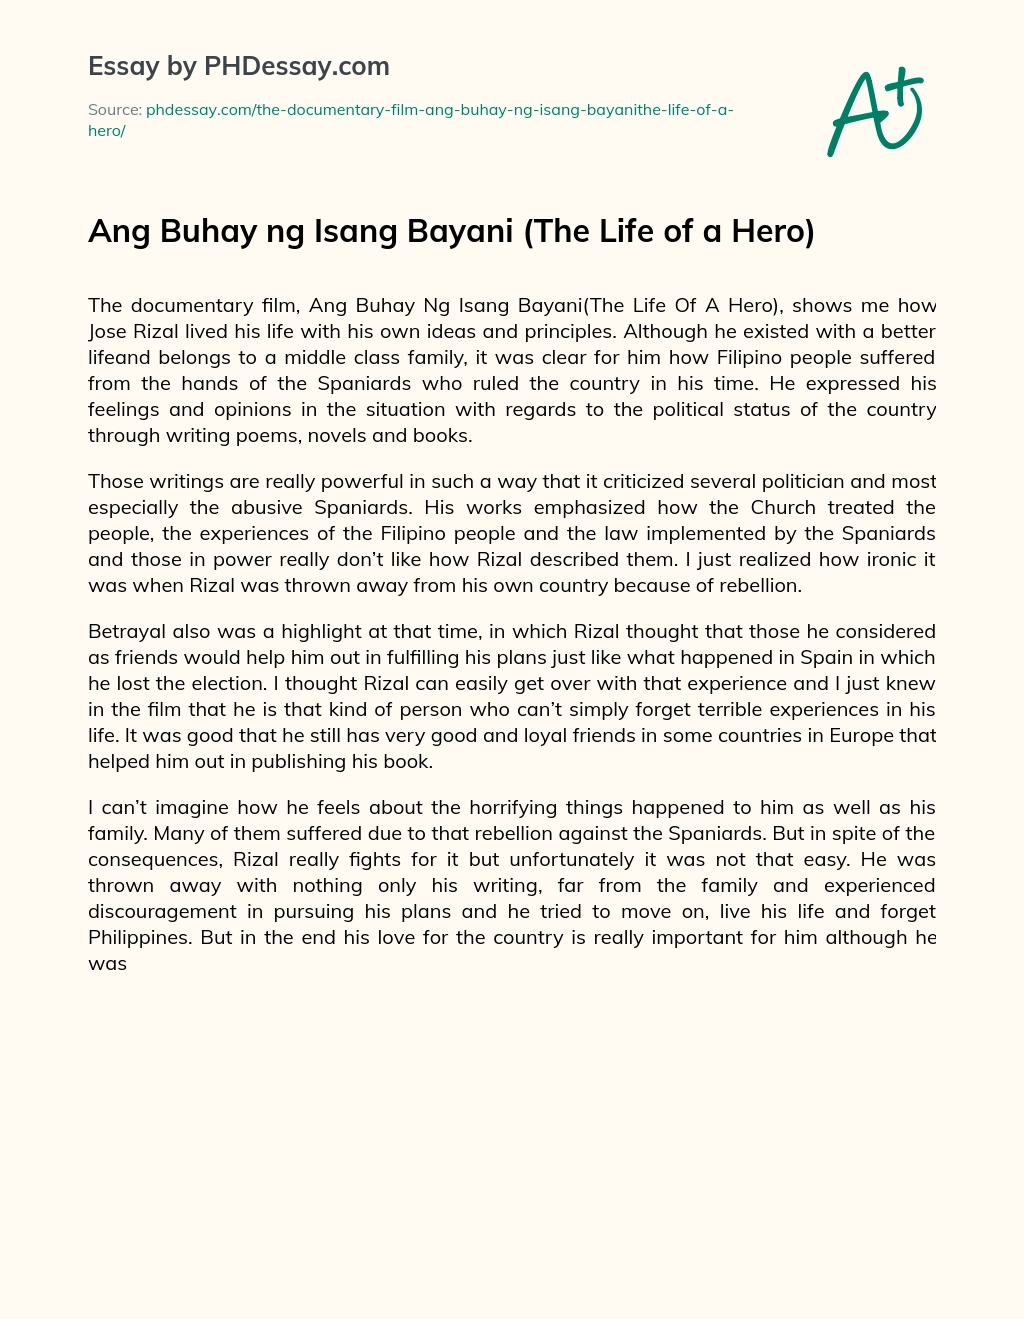 Ang Buhay ng Isang Bayani (The Life of a Hero) essay